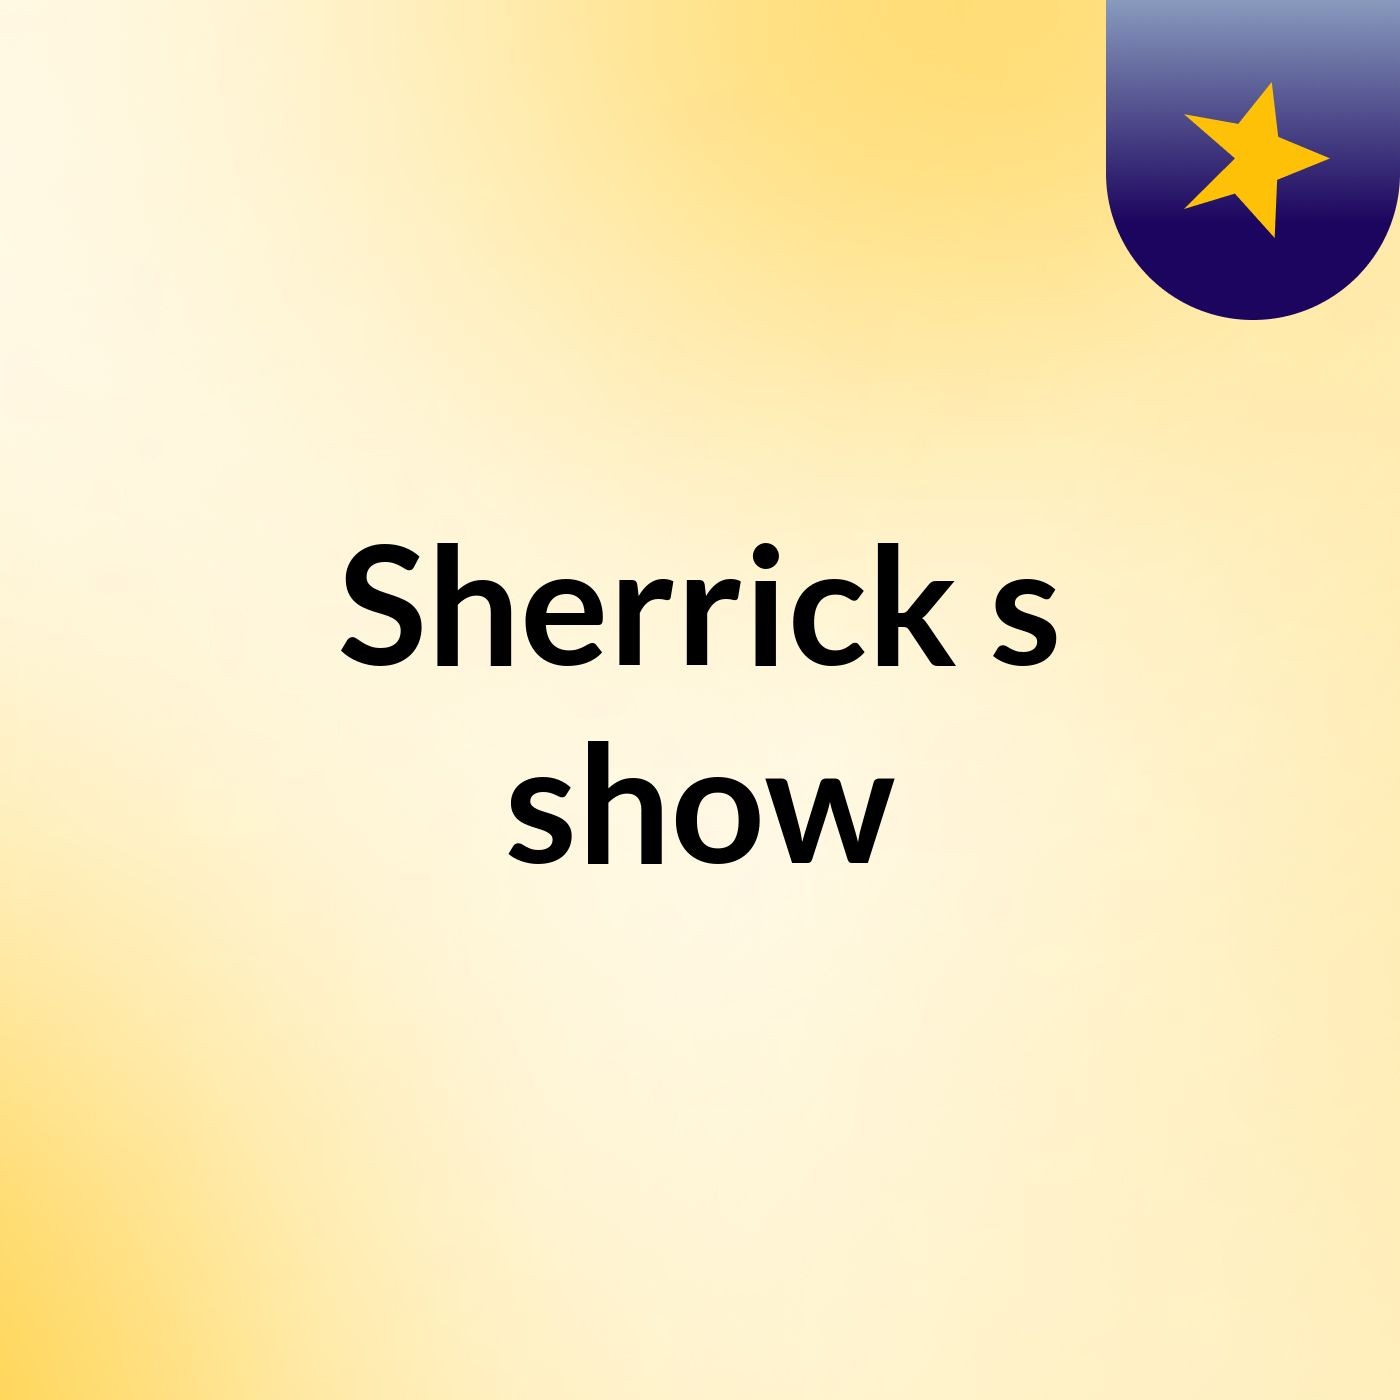 Sherrick's show